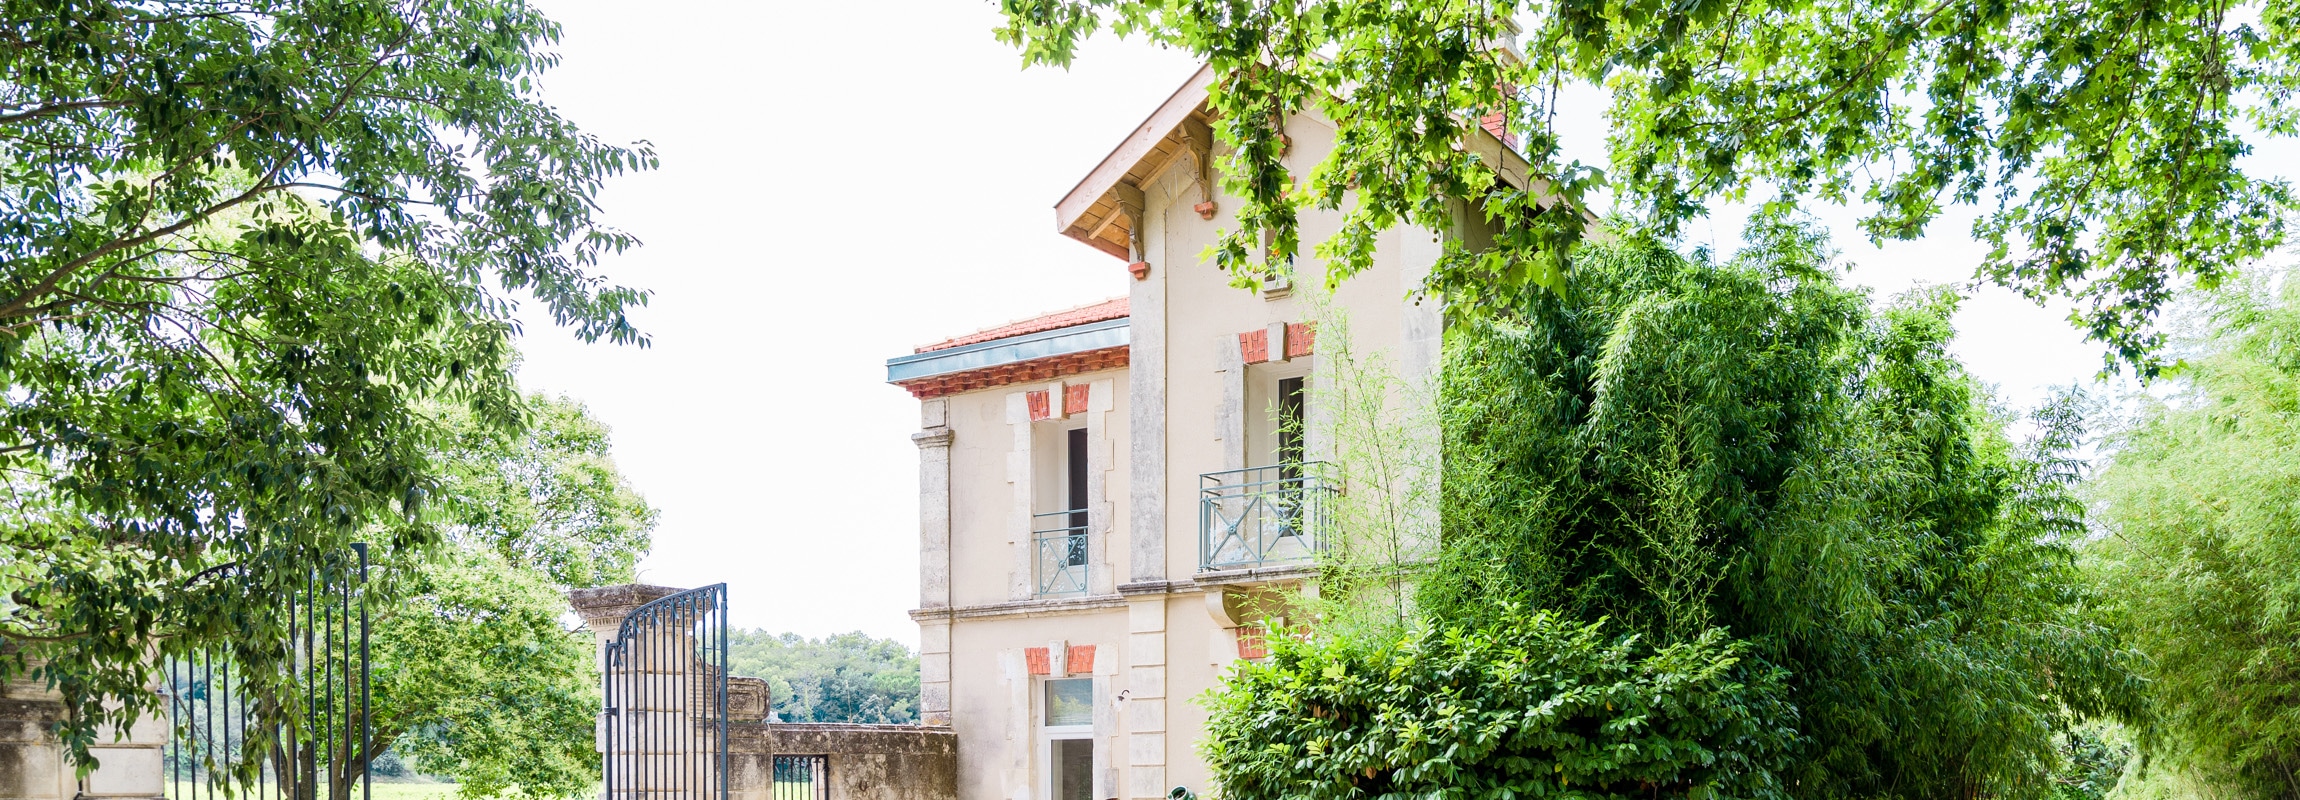 Das Ferienhaus La Maison, Château de Montcaud, Hotel Provence